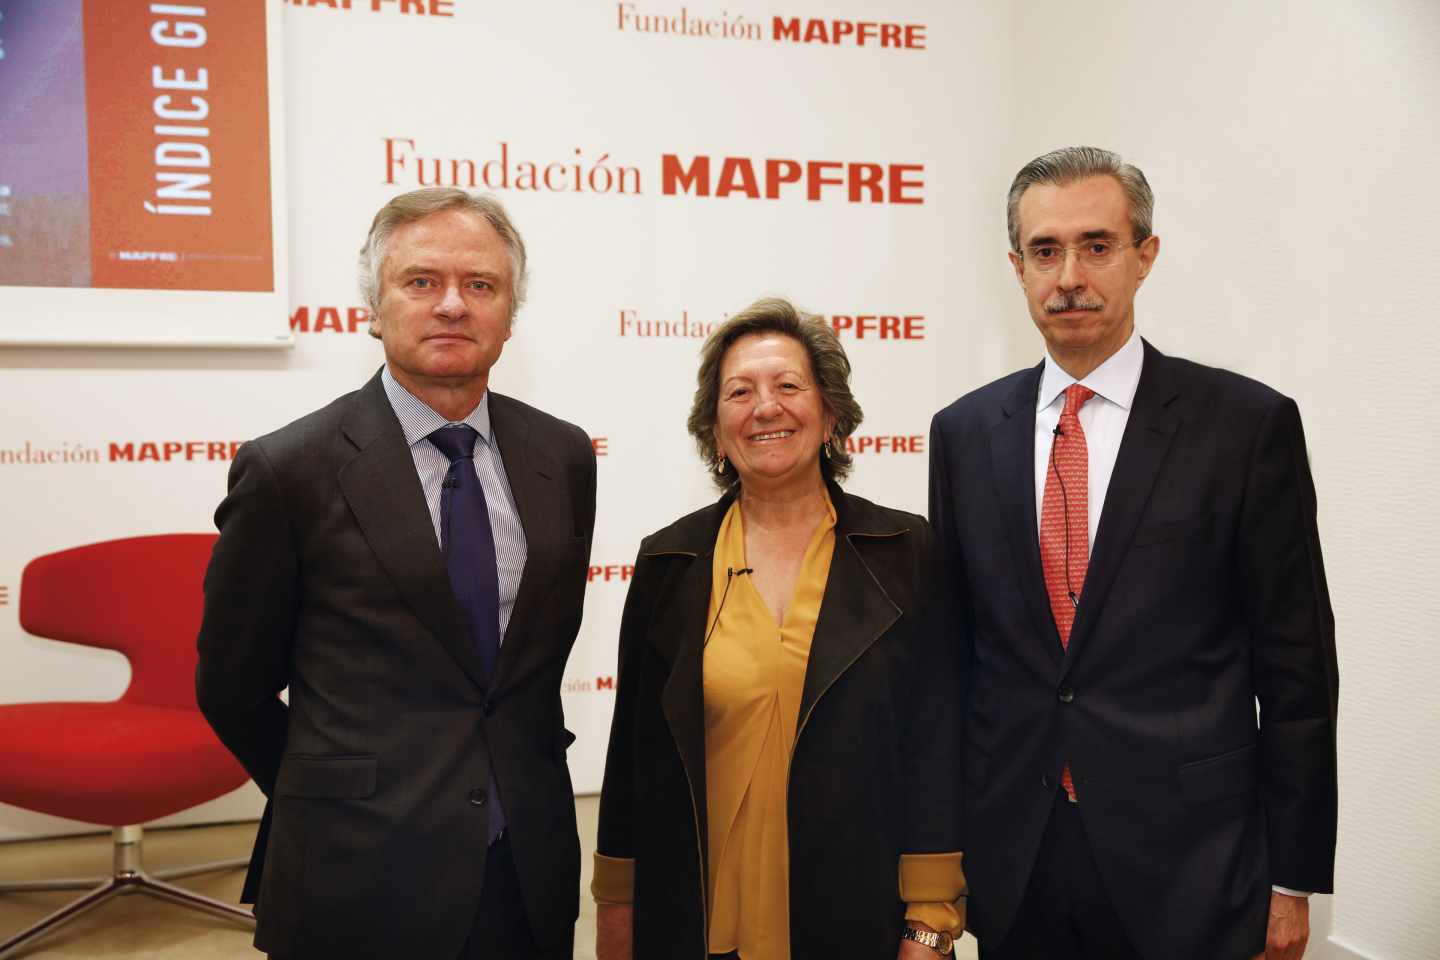 De izq. a dcha., de izquierda a derecha, Ignacio Baeza, vicepresidente de Mapfre, Pilar González de Frutos, presidenta de Unespa, y Manuel Aguilera, director general del Servicio de Estudios de Mapfre.